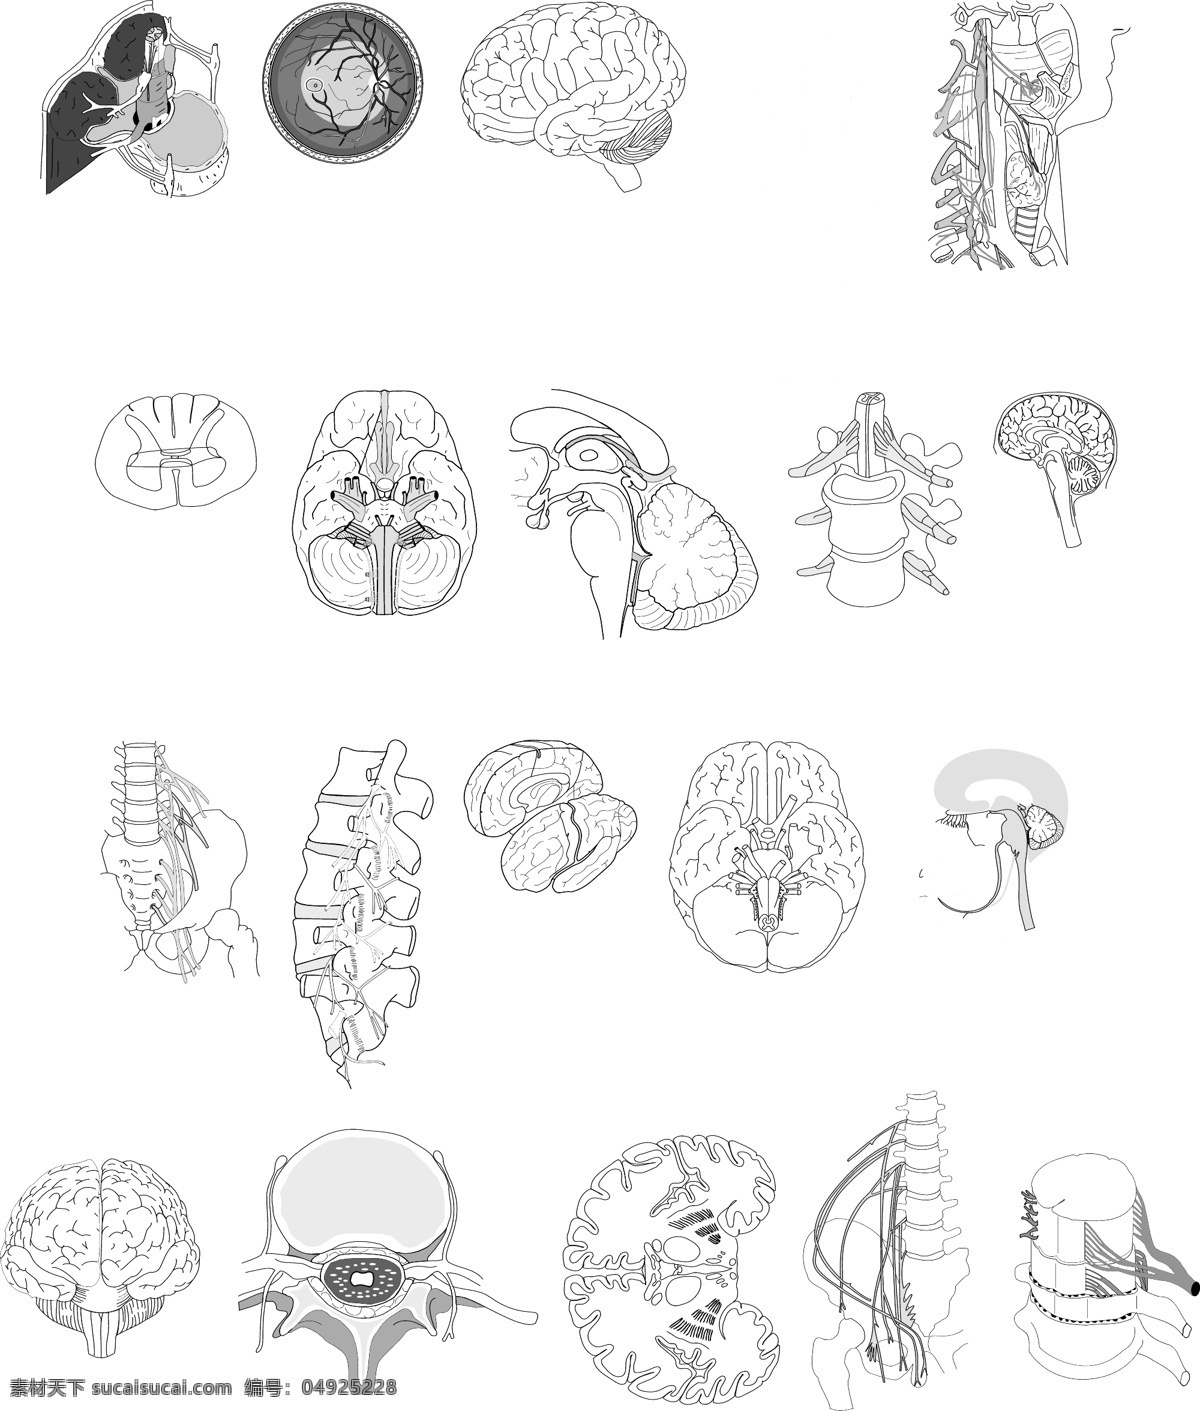 大脑神经 大脑 神经 脊髓 龙骨 头部 医疗保健 生活百科 矢量